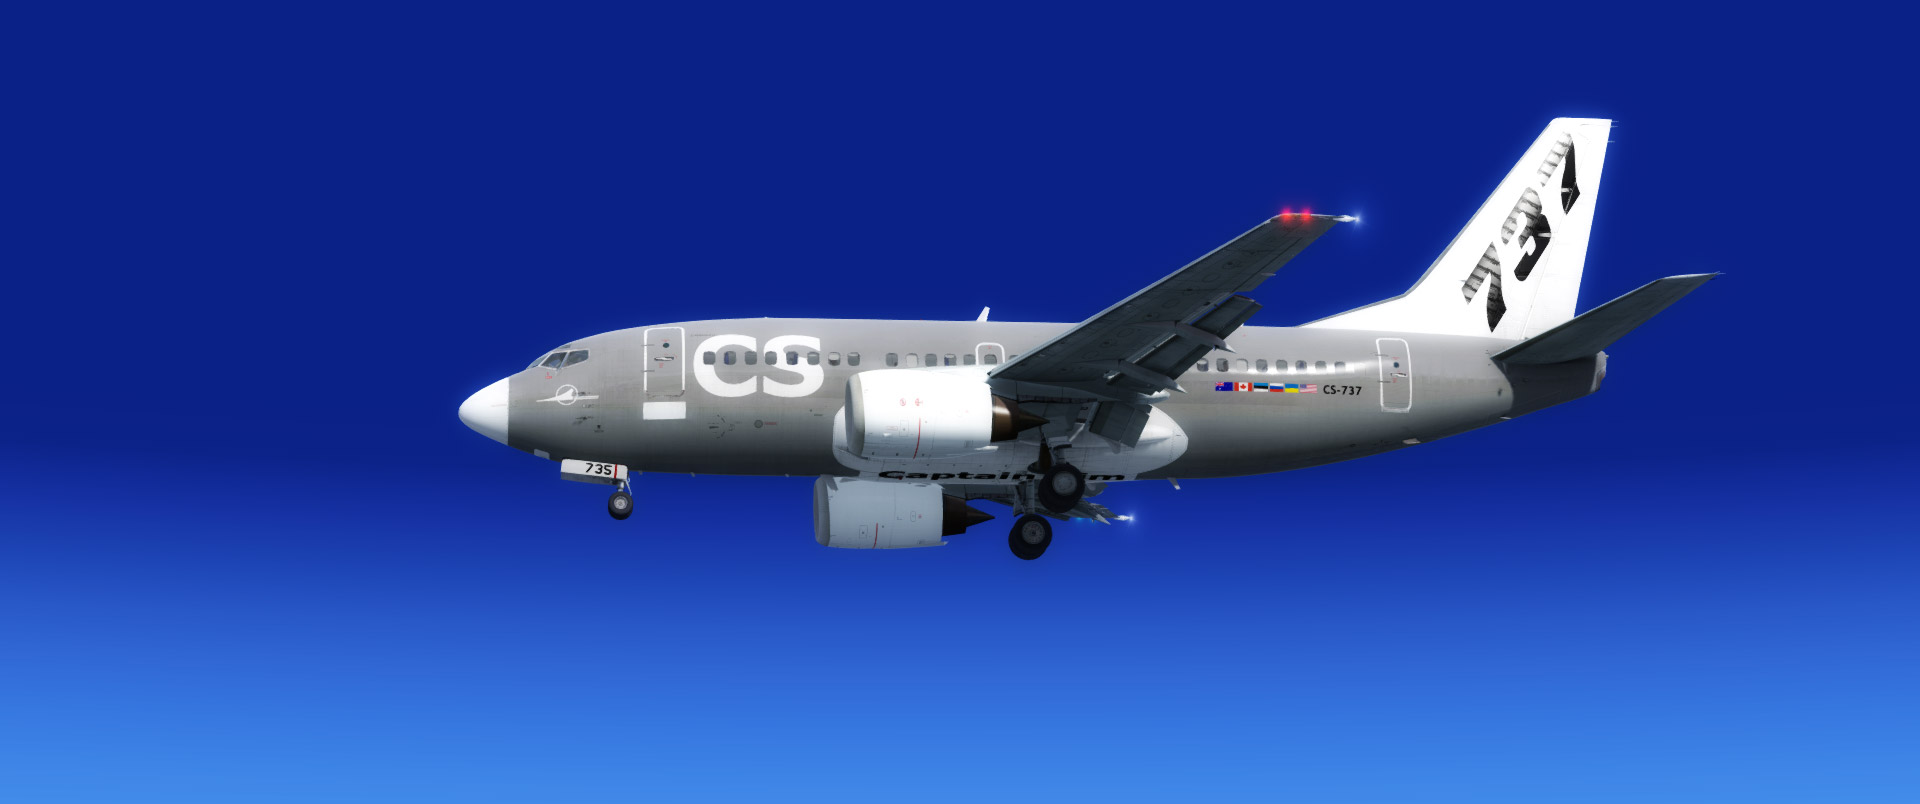 737-500